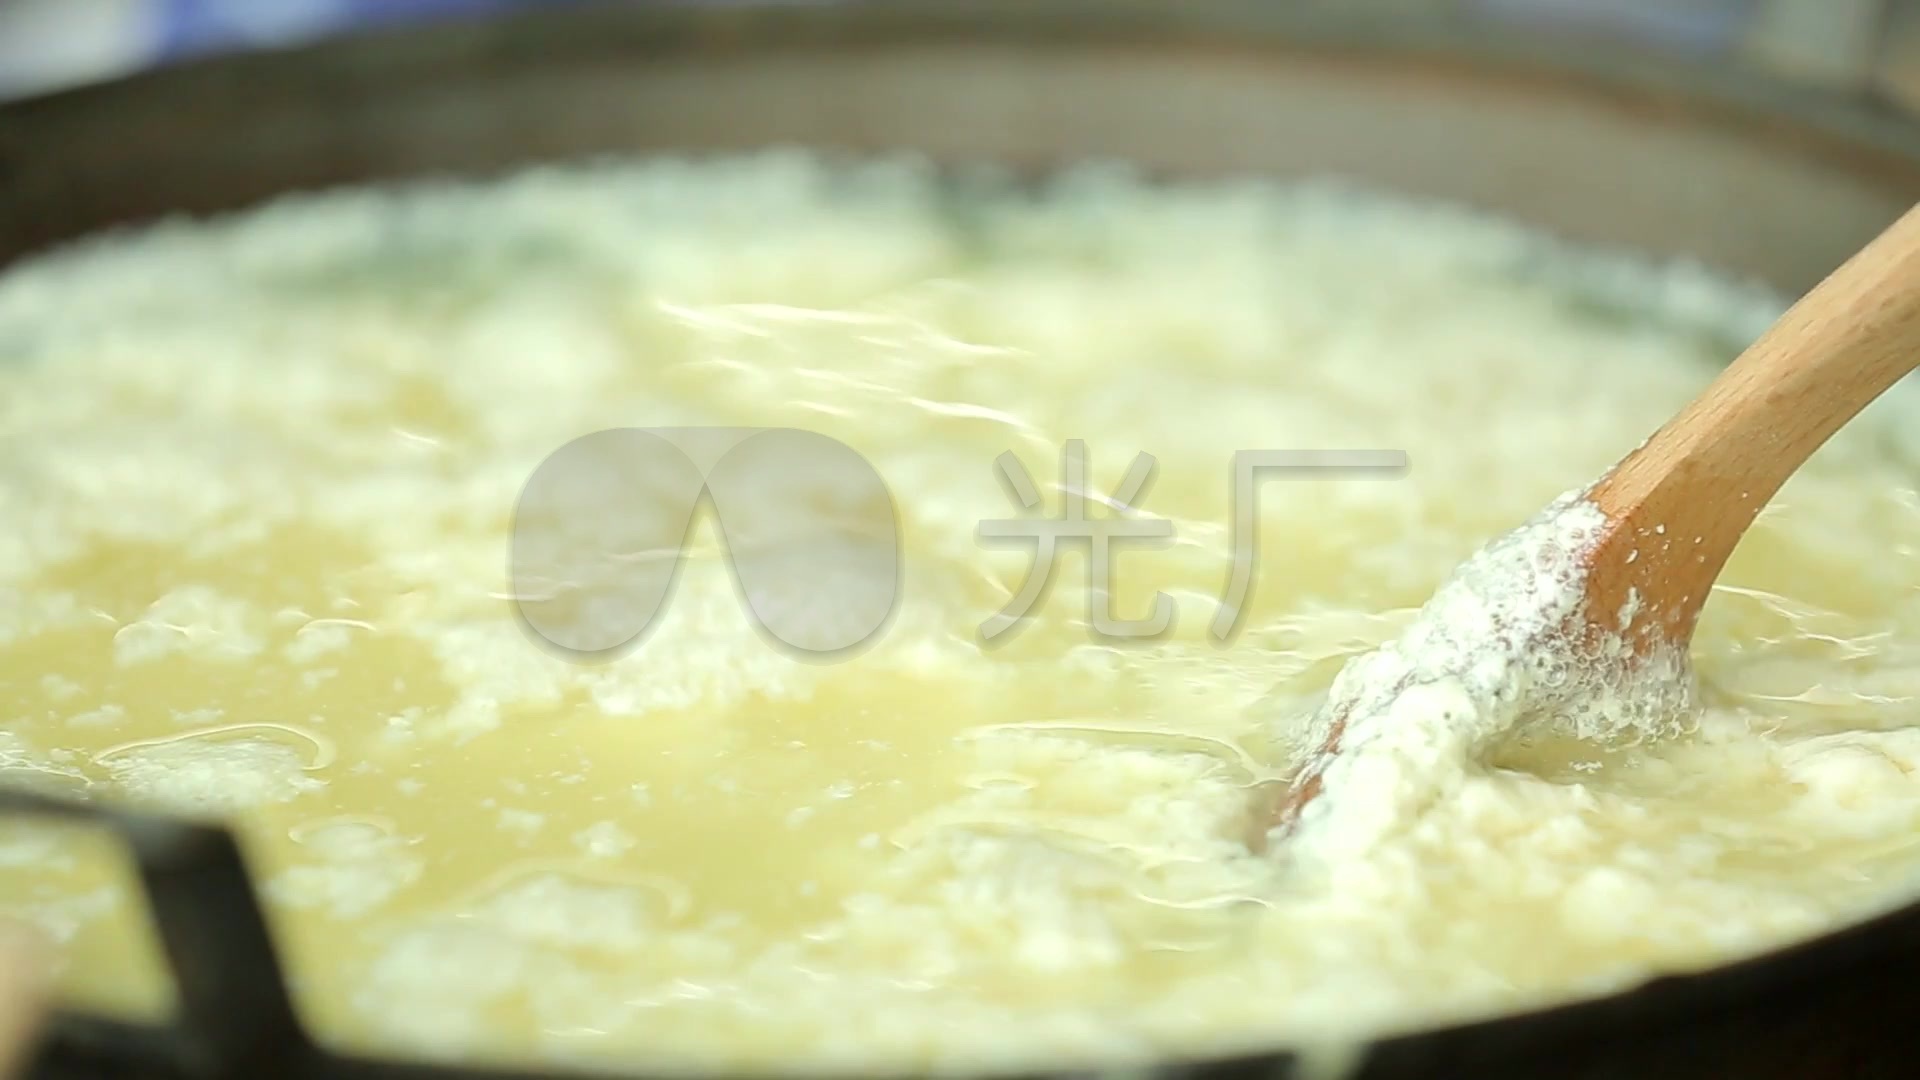 云南的腌制发酵食品——两大卤腐、两大酱、四种豆豉的制作及文化 - 知乎